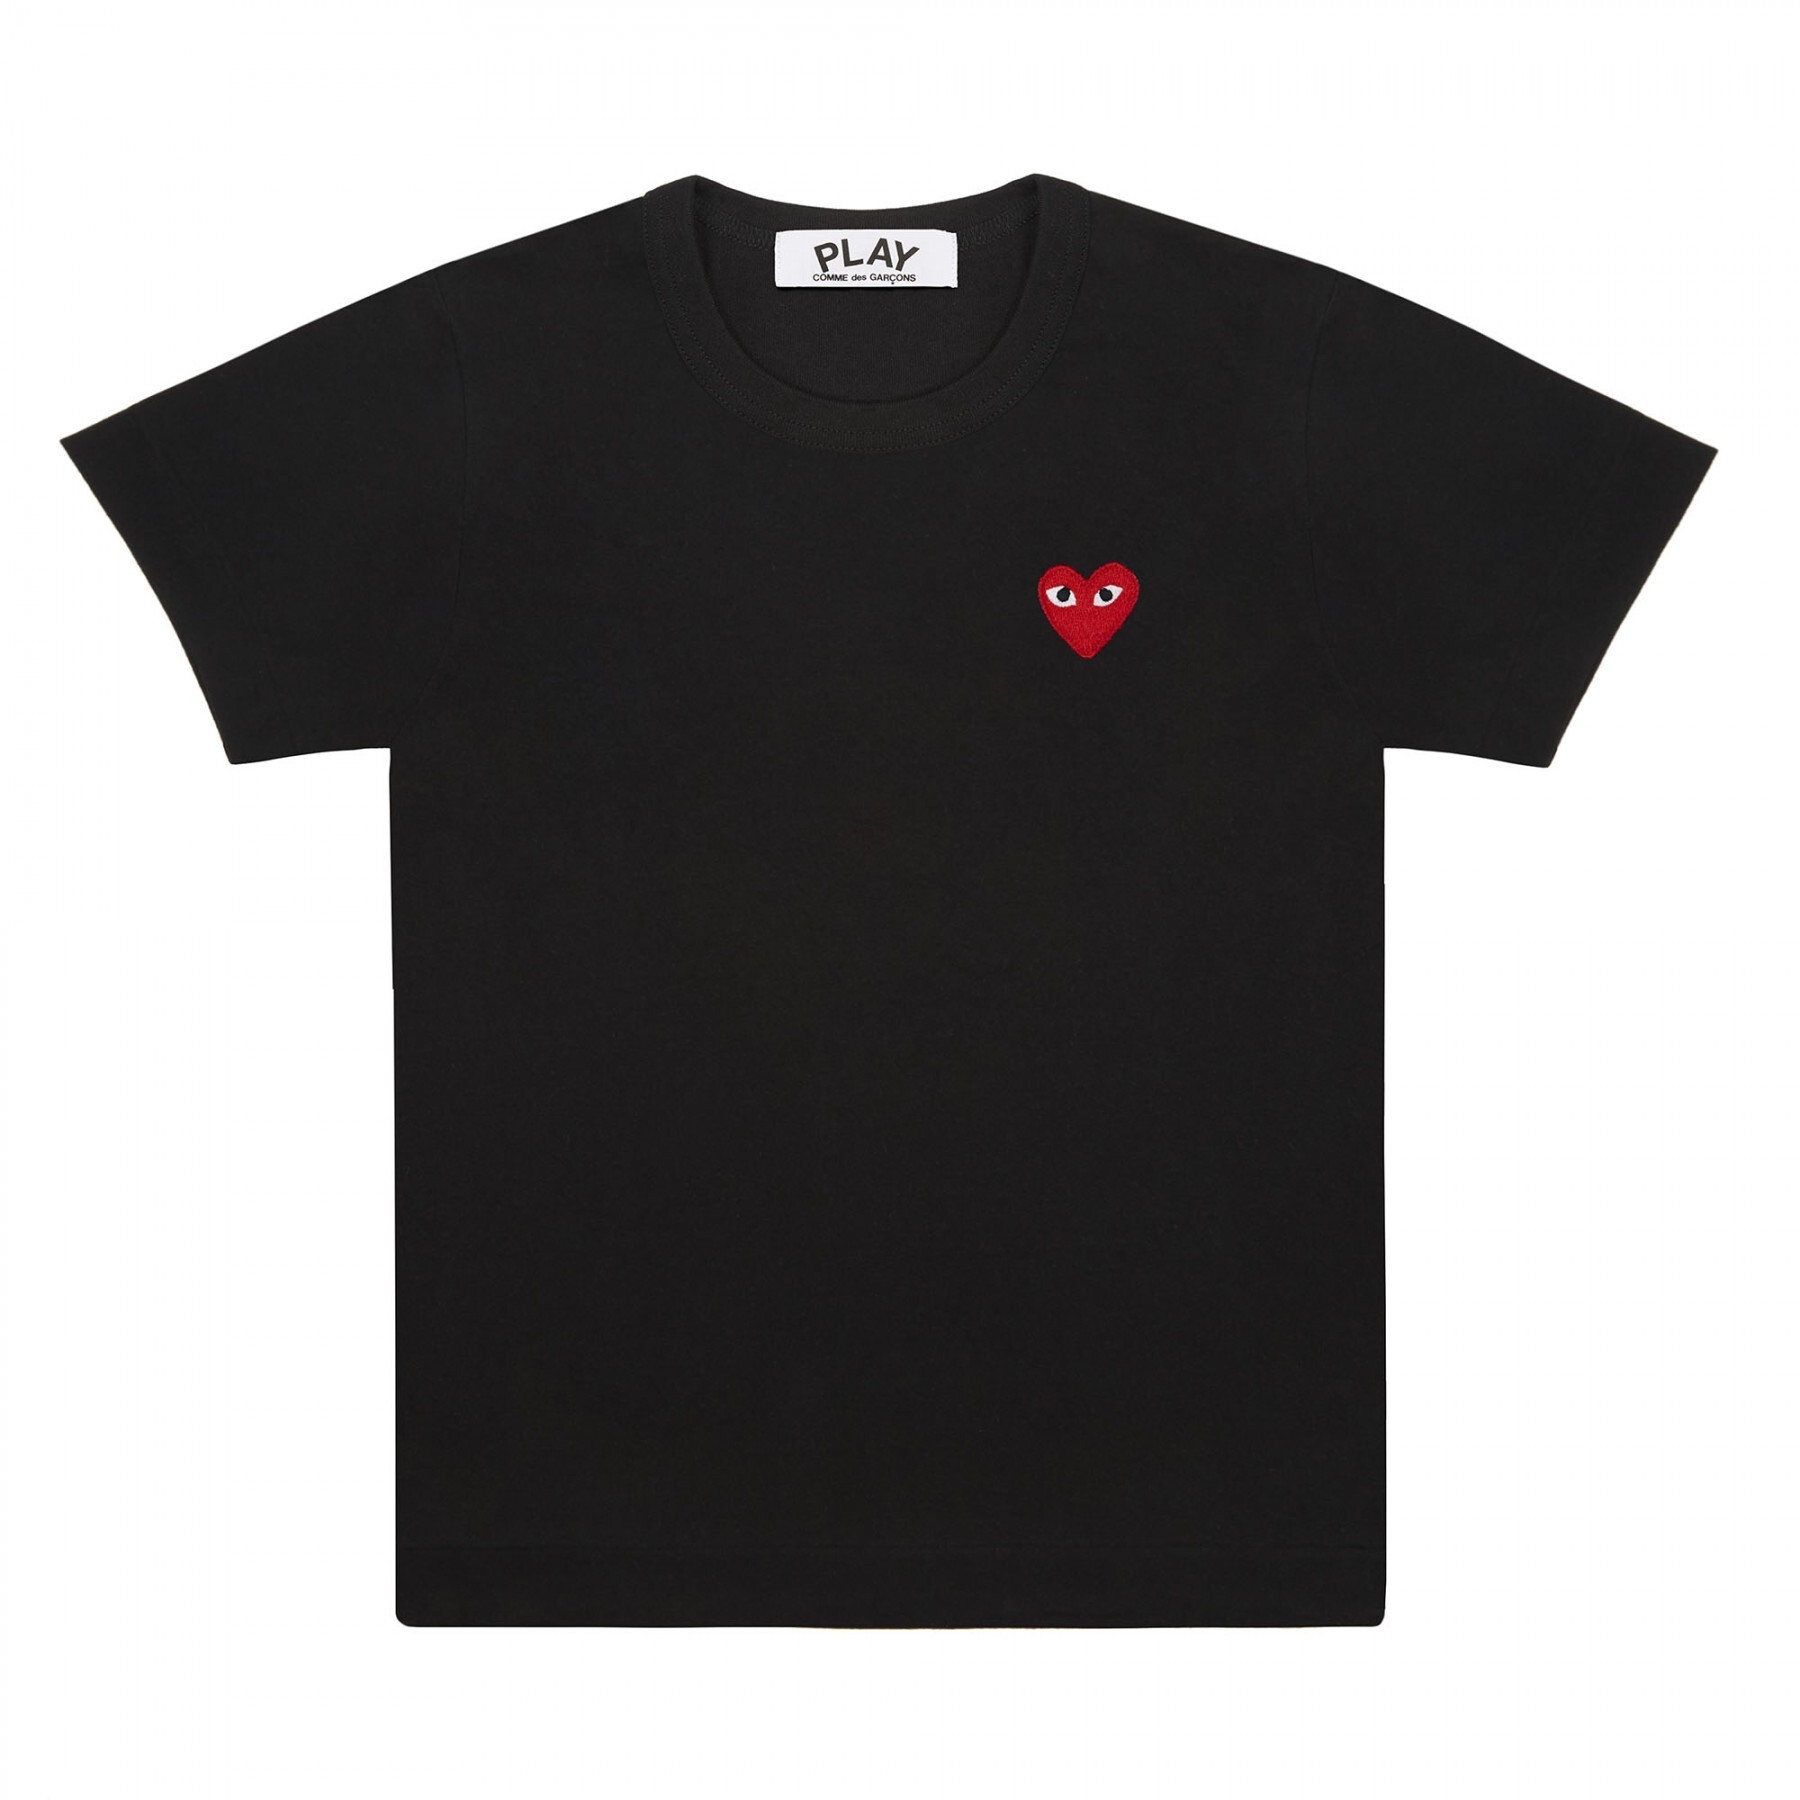 Comme des Garçons обновил логотип сердца в новой коллекции PLAY